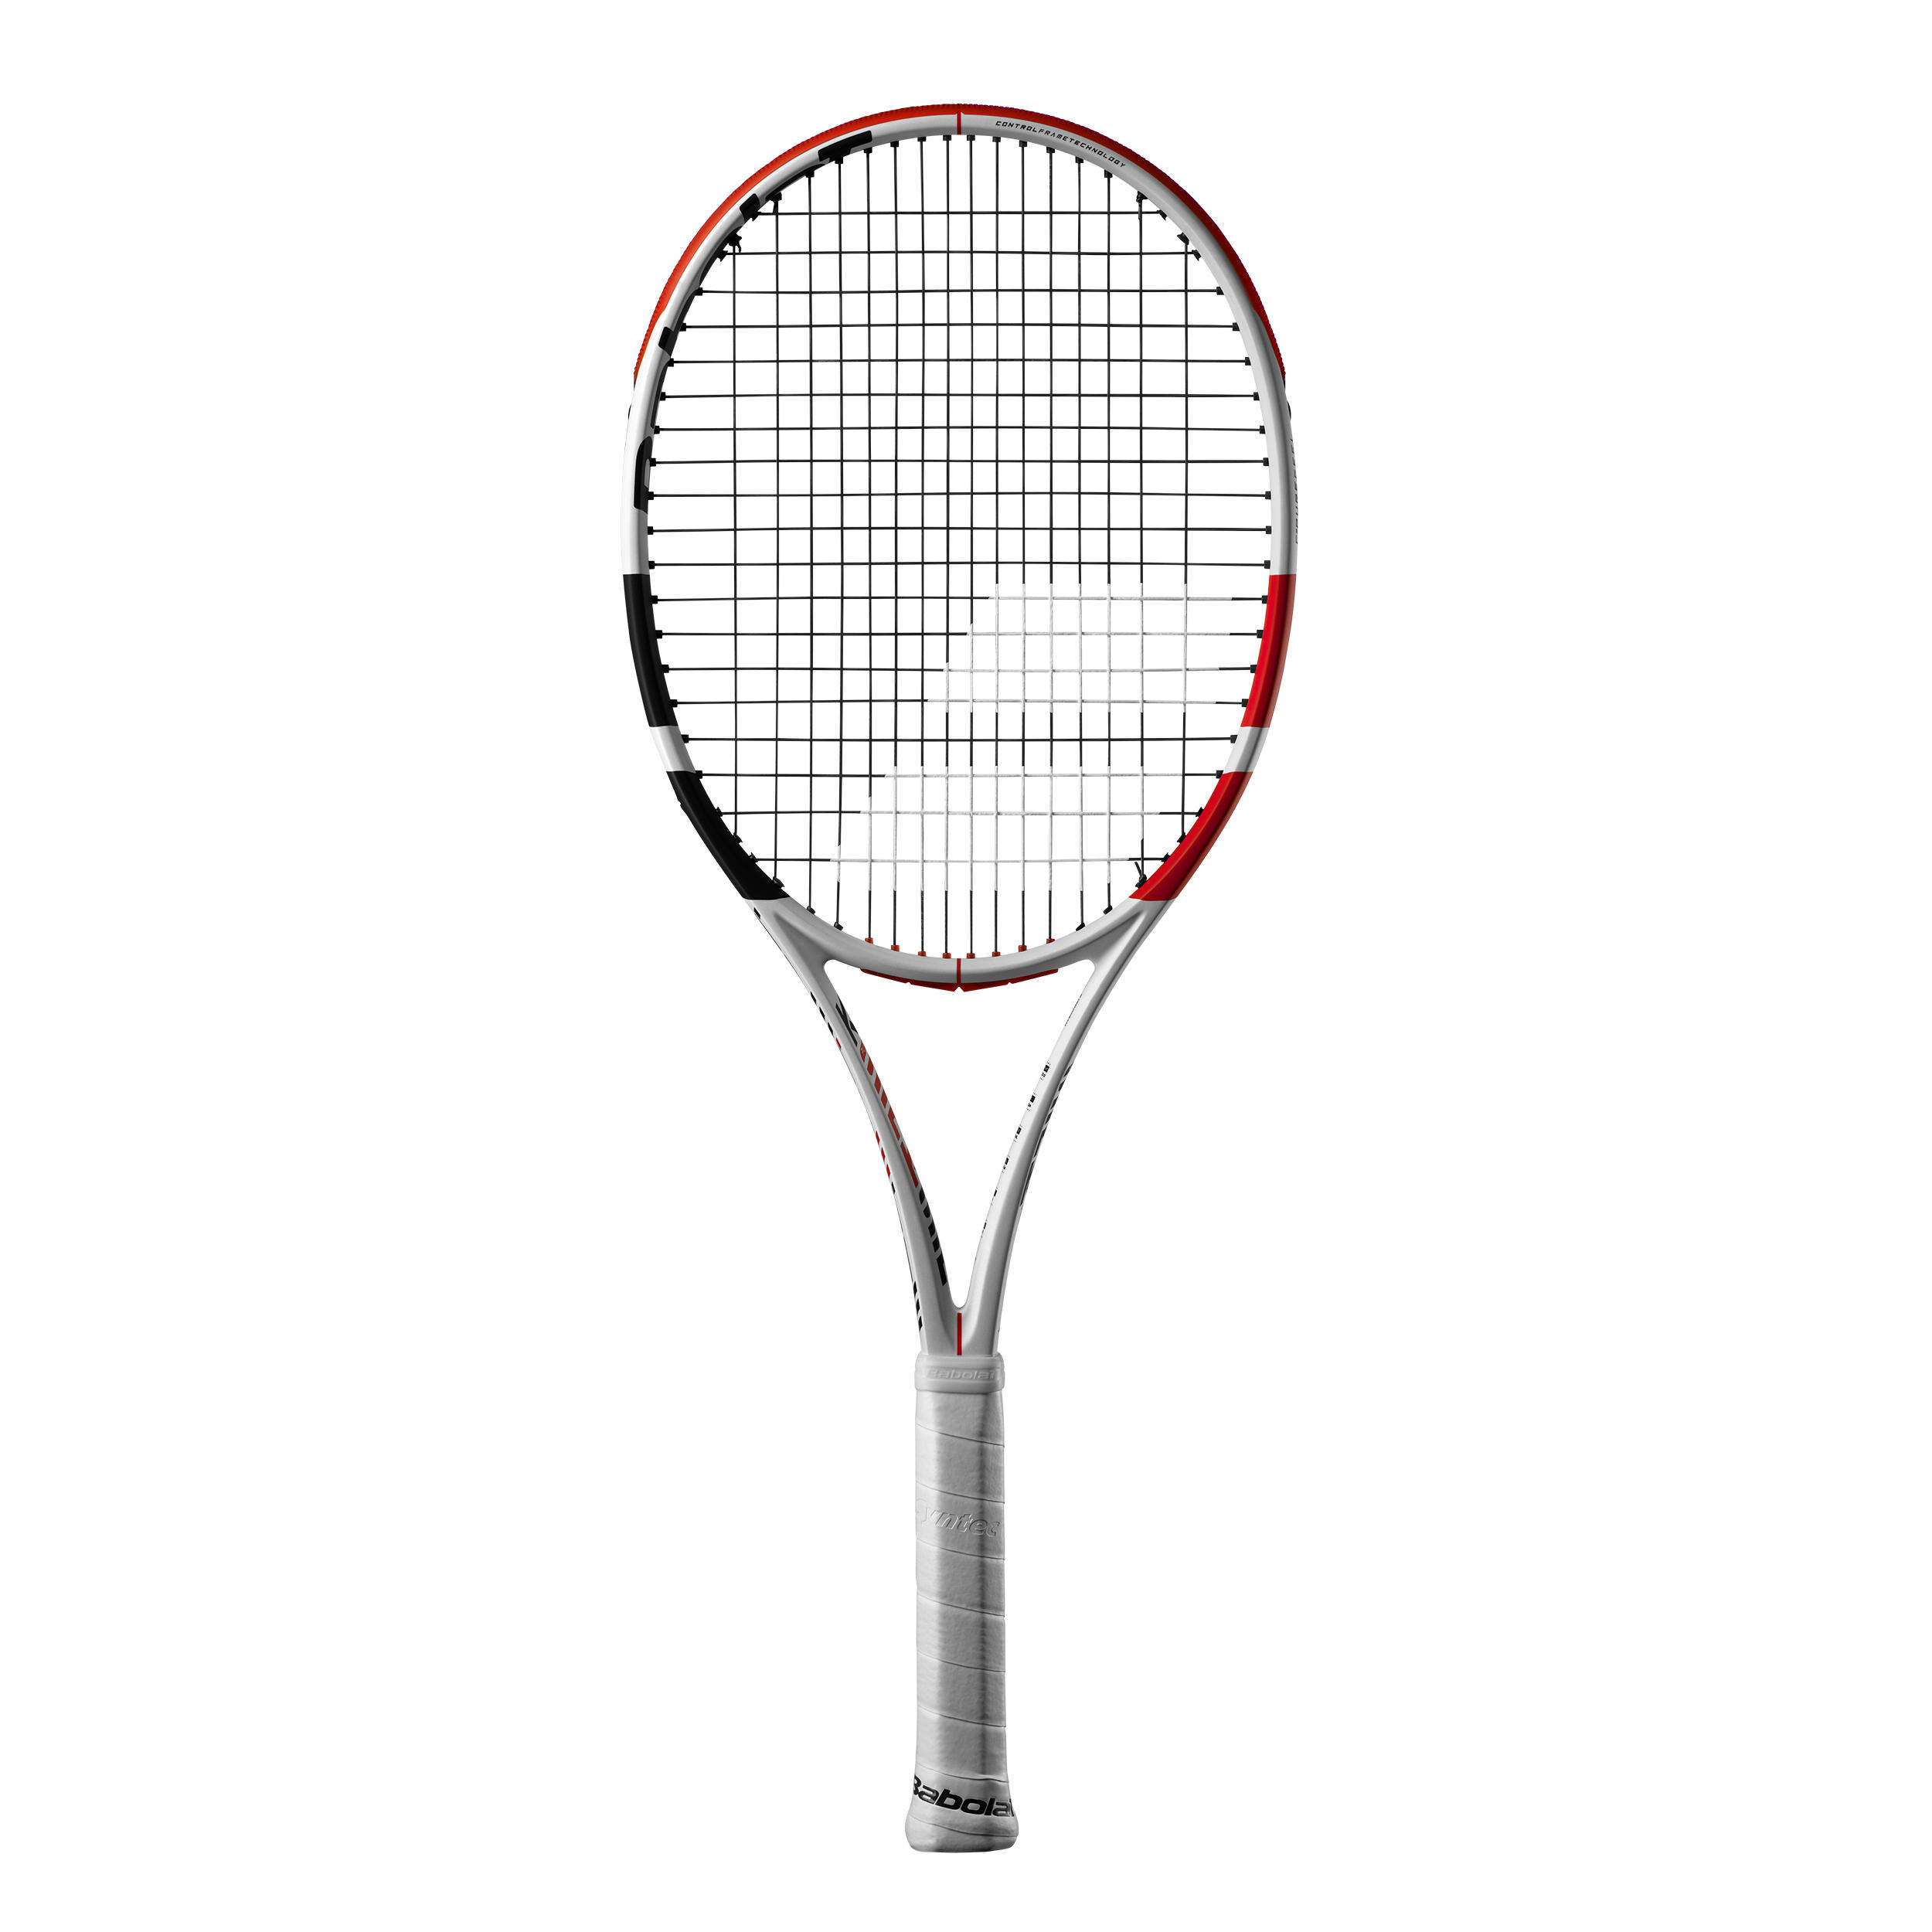 Rachetă Tenis Babolat Pure Strike 100 Alb-Roșu Adulţi La Oferta Online BABOLAT imagine La Oferta Online